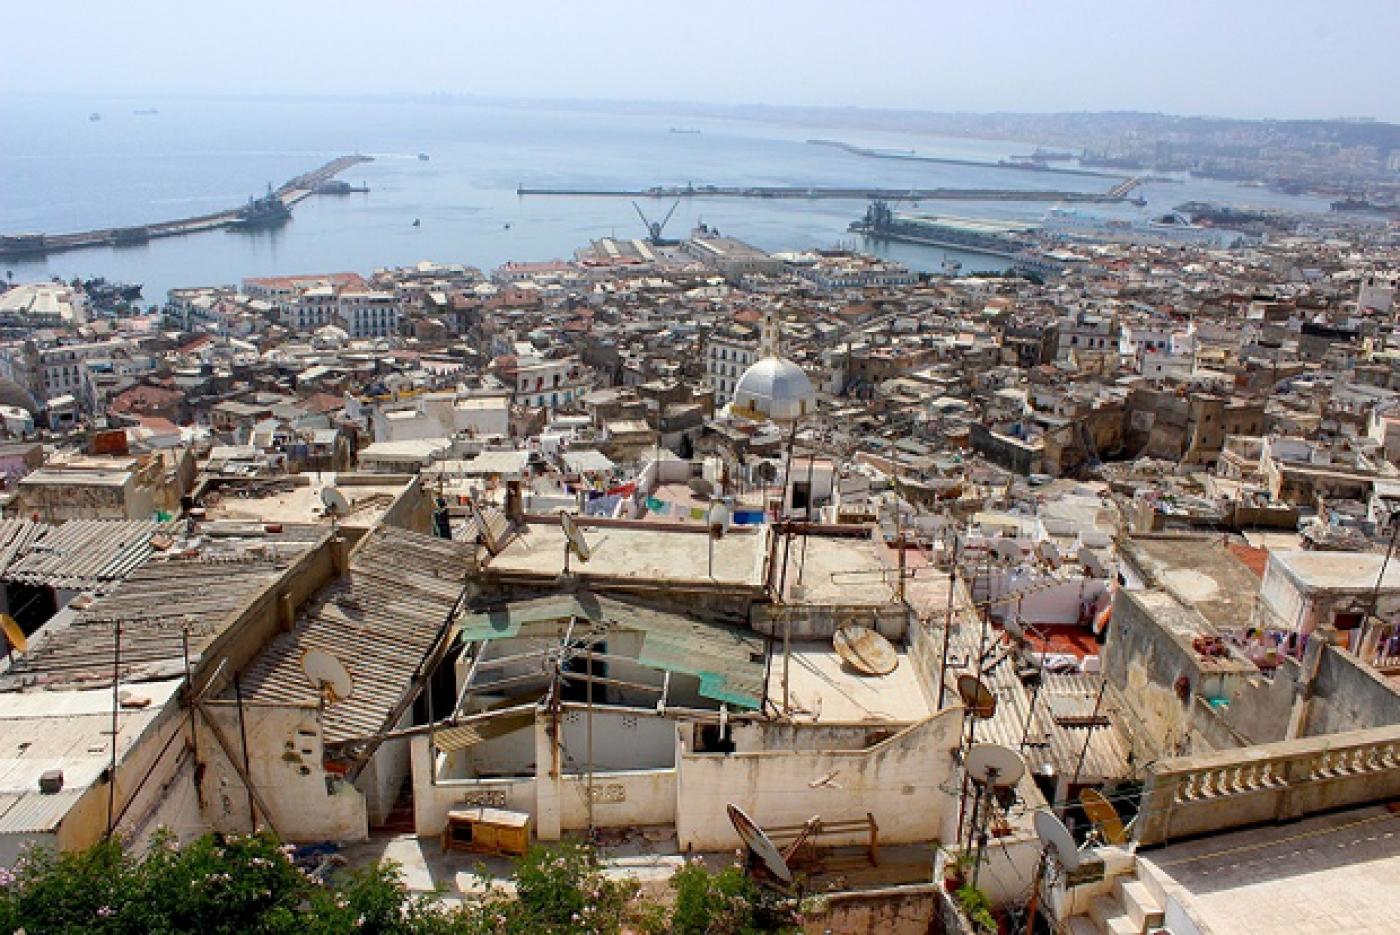 Algiers’ Casbah